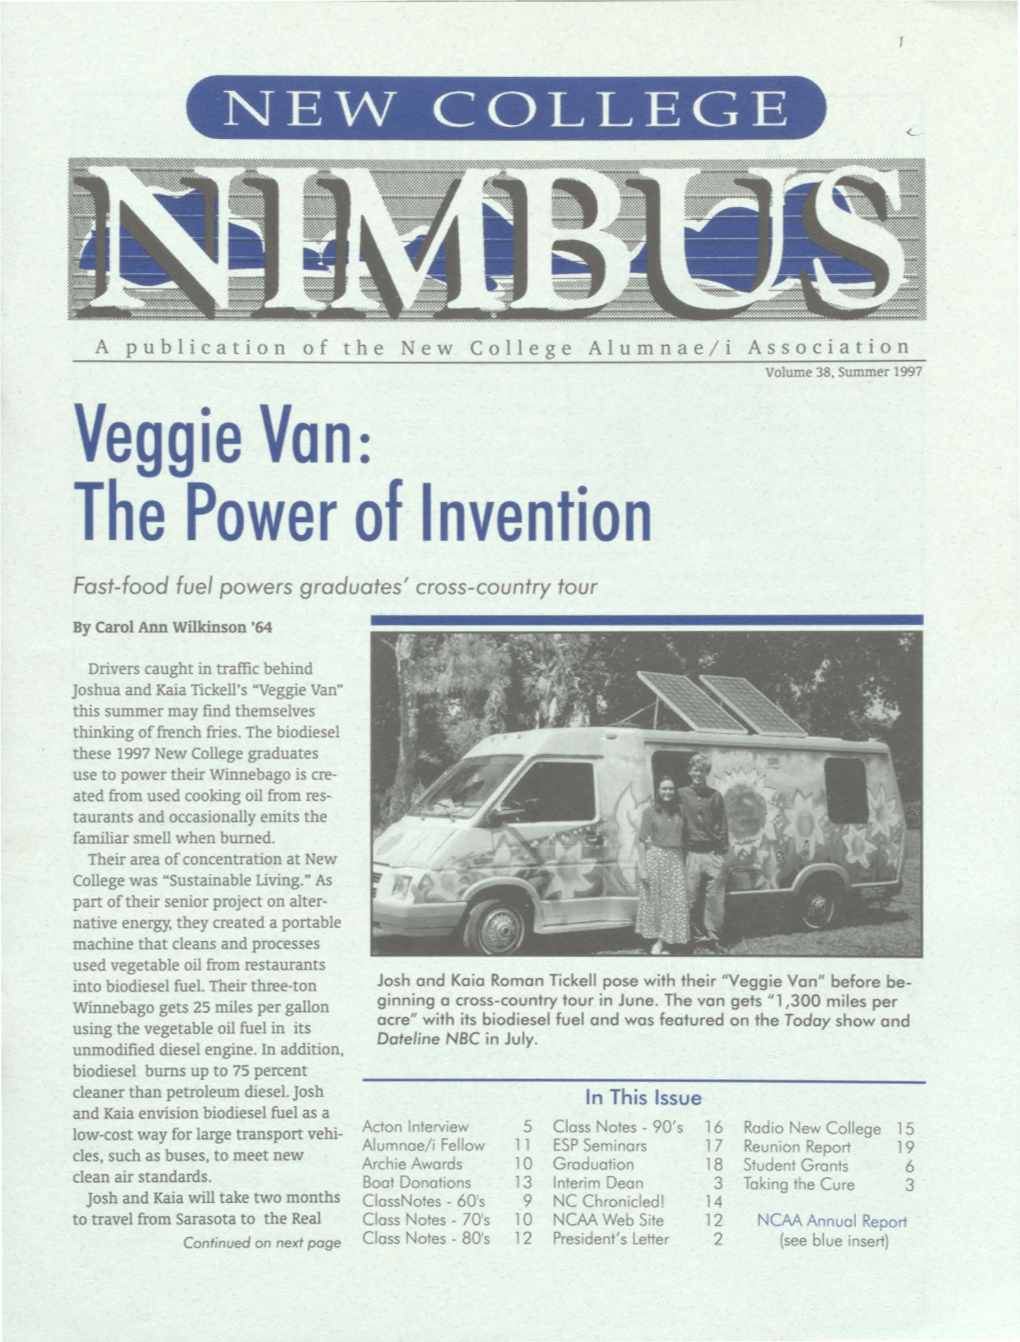 Veggie Von: the Power of Invention